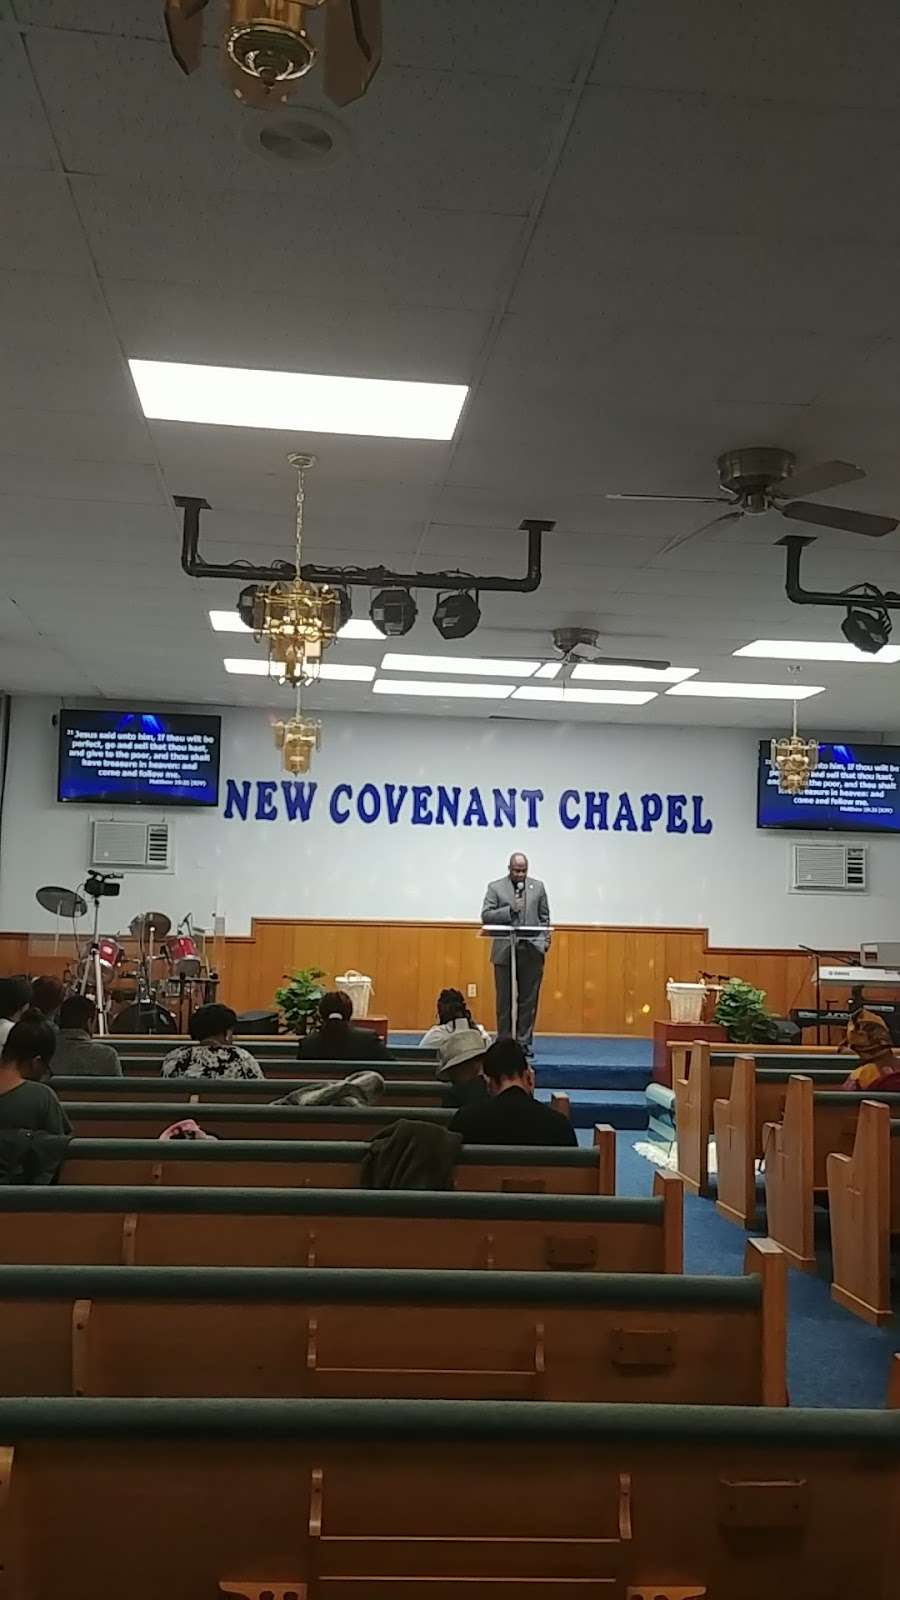 RCCG New Covenant Chapel, Green Lane PA | 417 Walnut St, Green Lane, PA 18054, USA